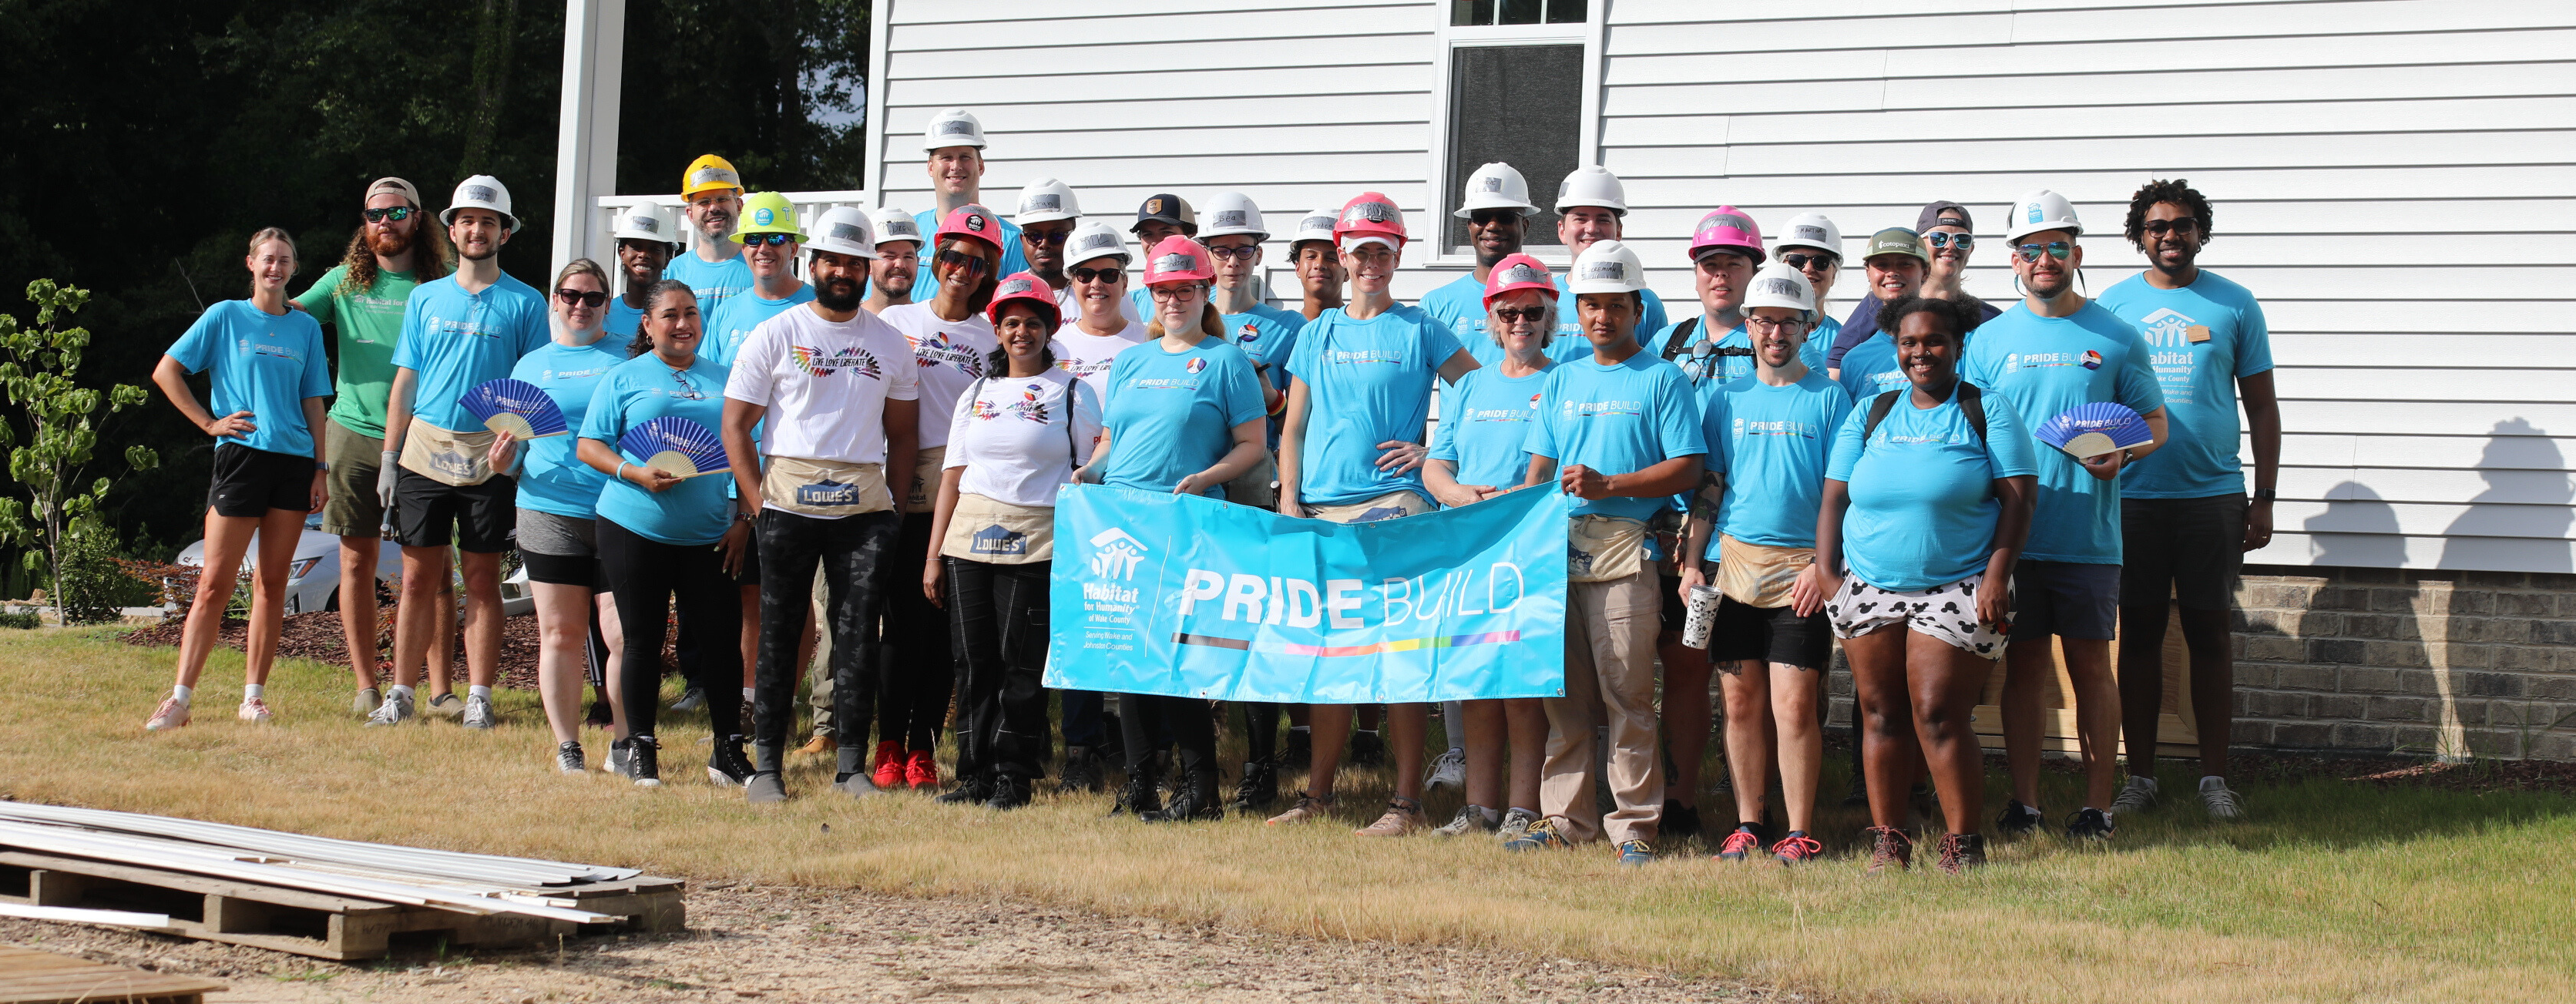 Group of volunteers at Pride Build day in Raleigh, N.C.